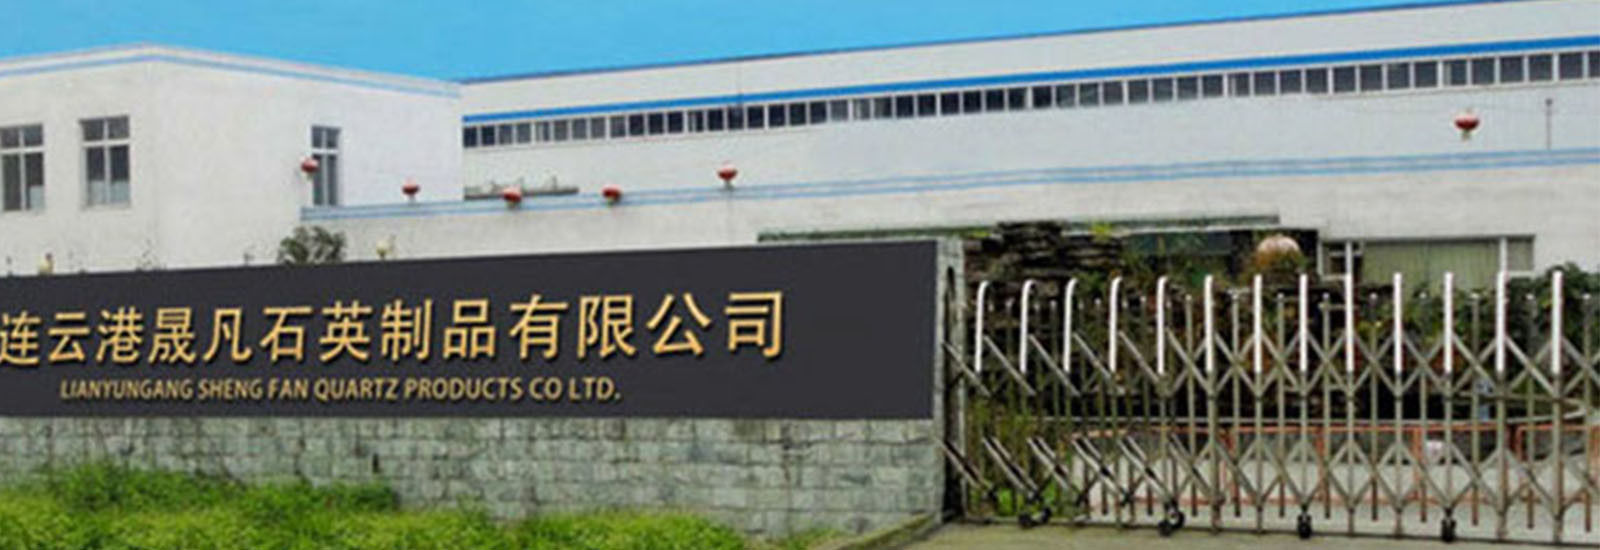 LA CHINE Lianyungang Shengfan Quartz Product Co., Ltd Profil de la société